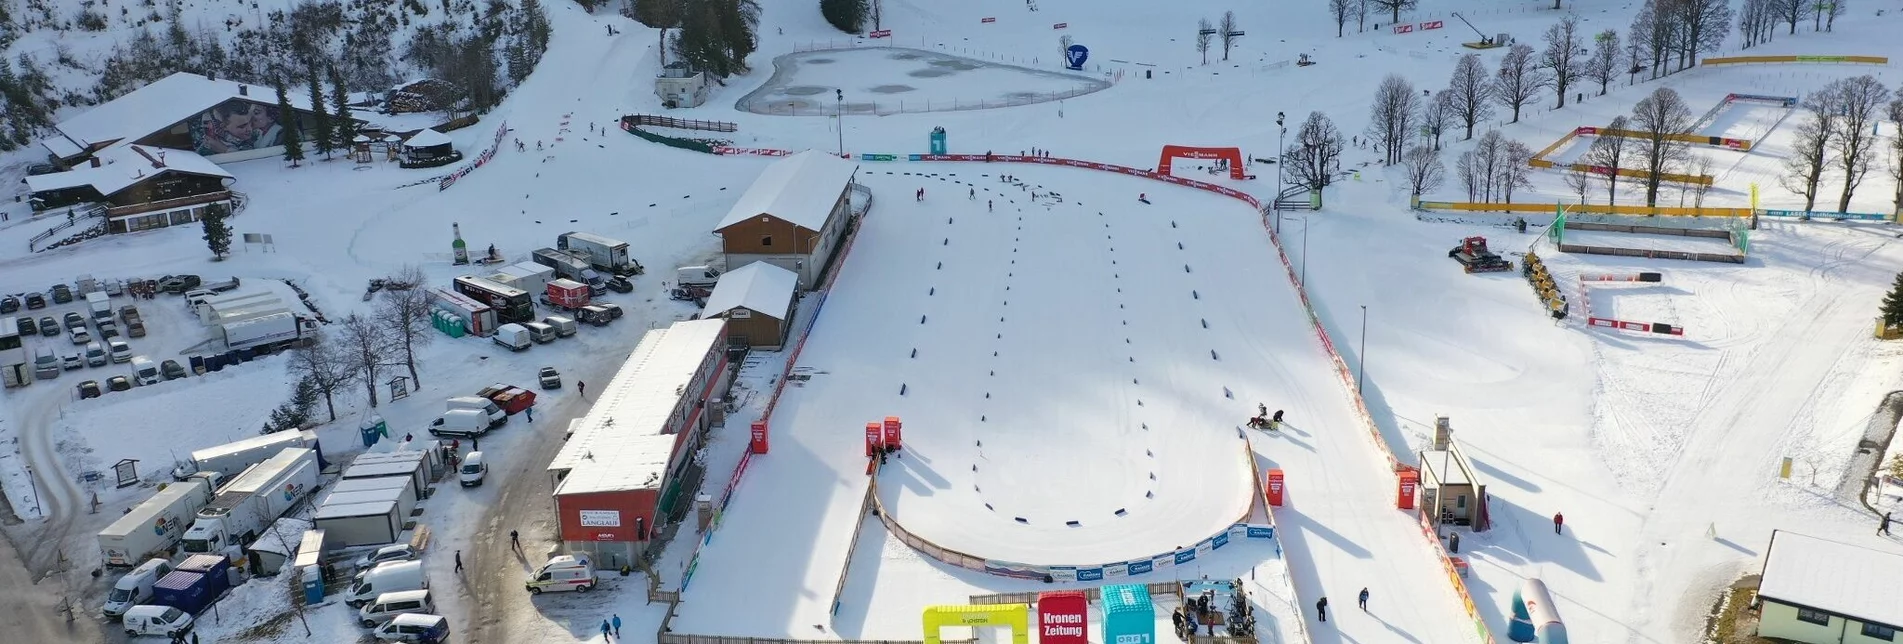 Blick auf das Langlaufstadion beim Nordischen Weltcup | © Erlebnisregion Schladming-Dachstein